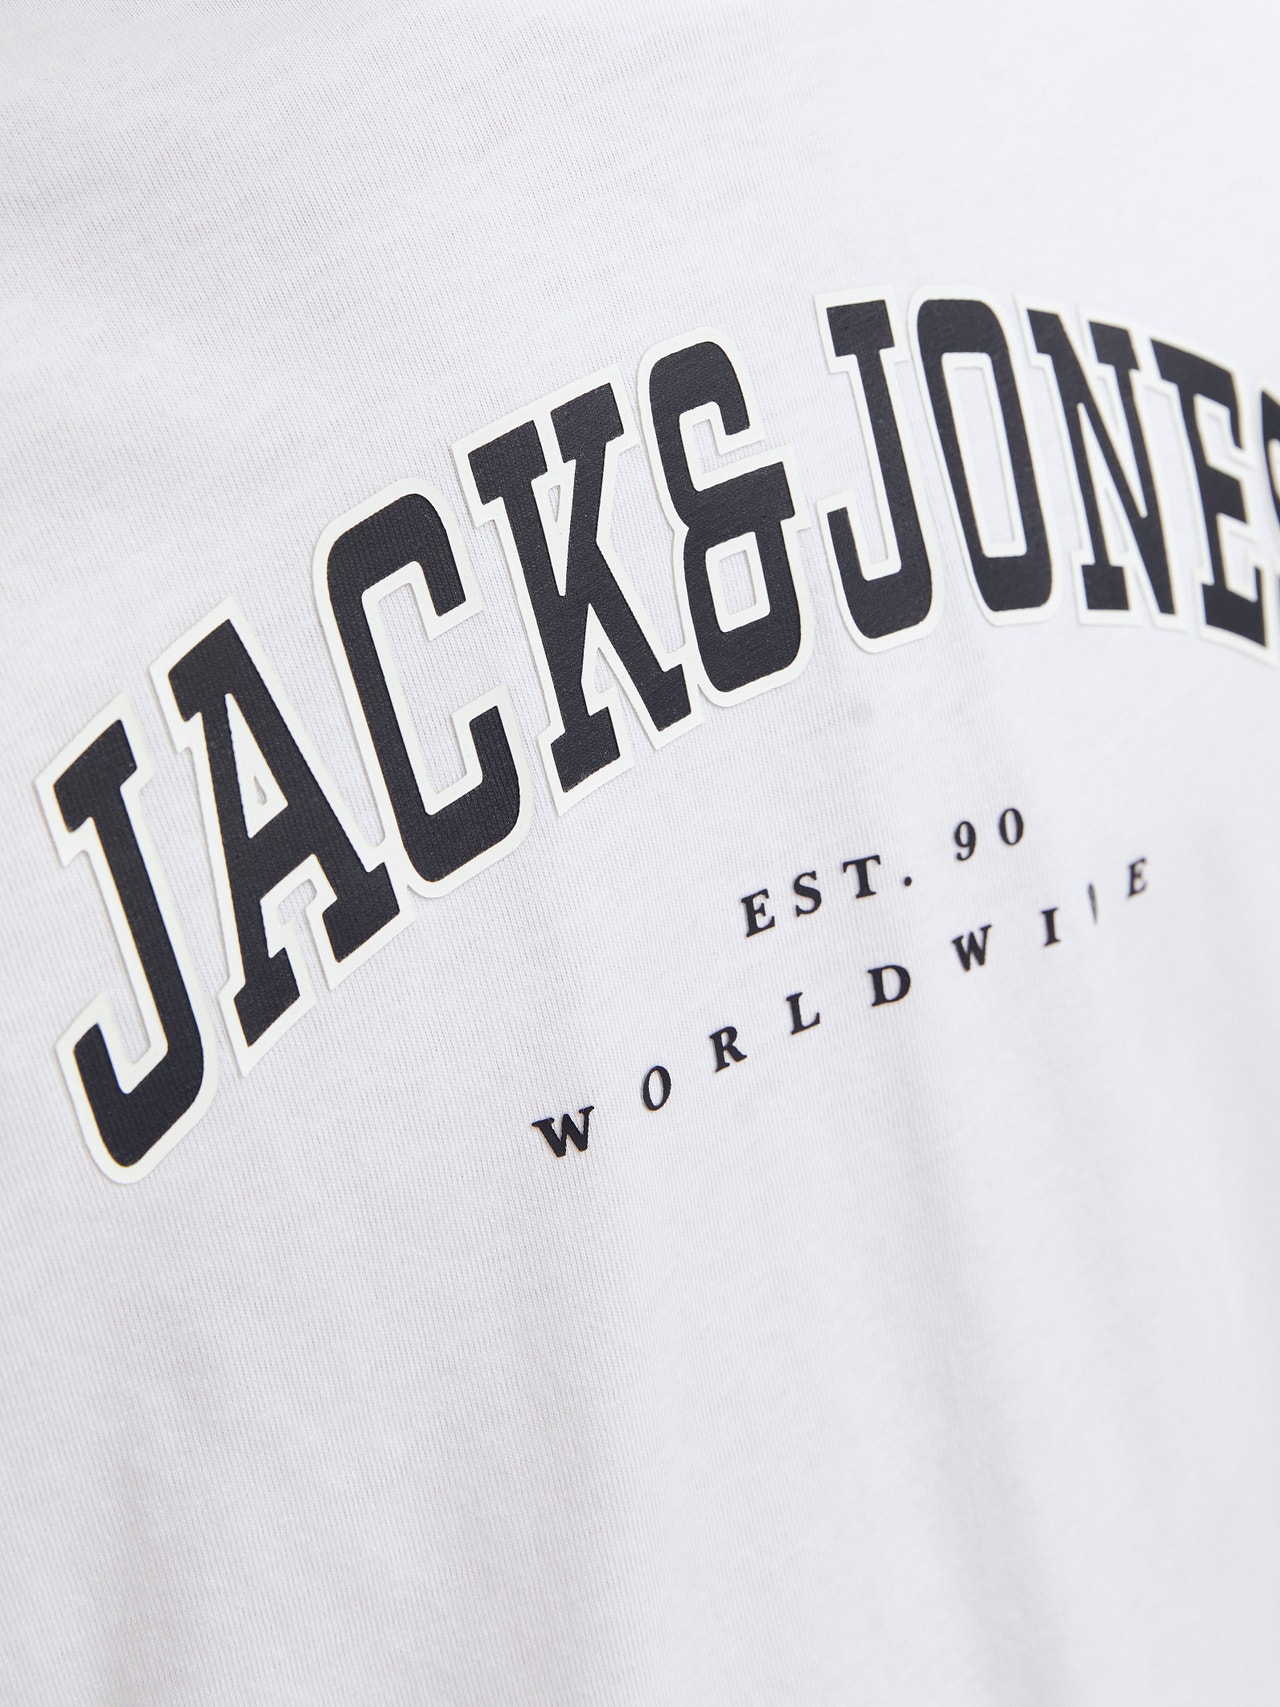 Jack & Jones Logo T-shirt Für jungs -White - 12258928